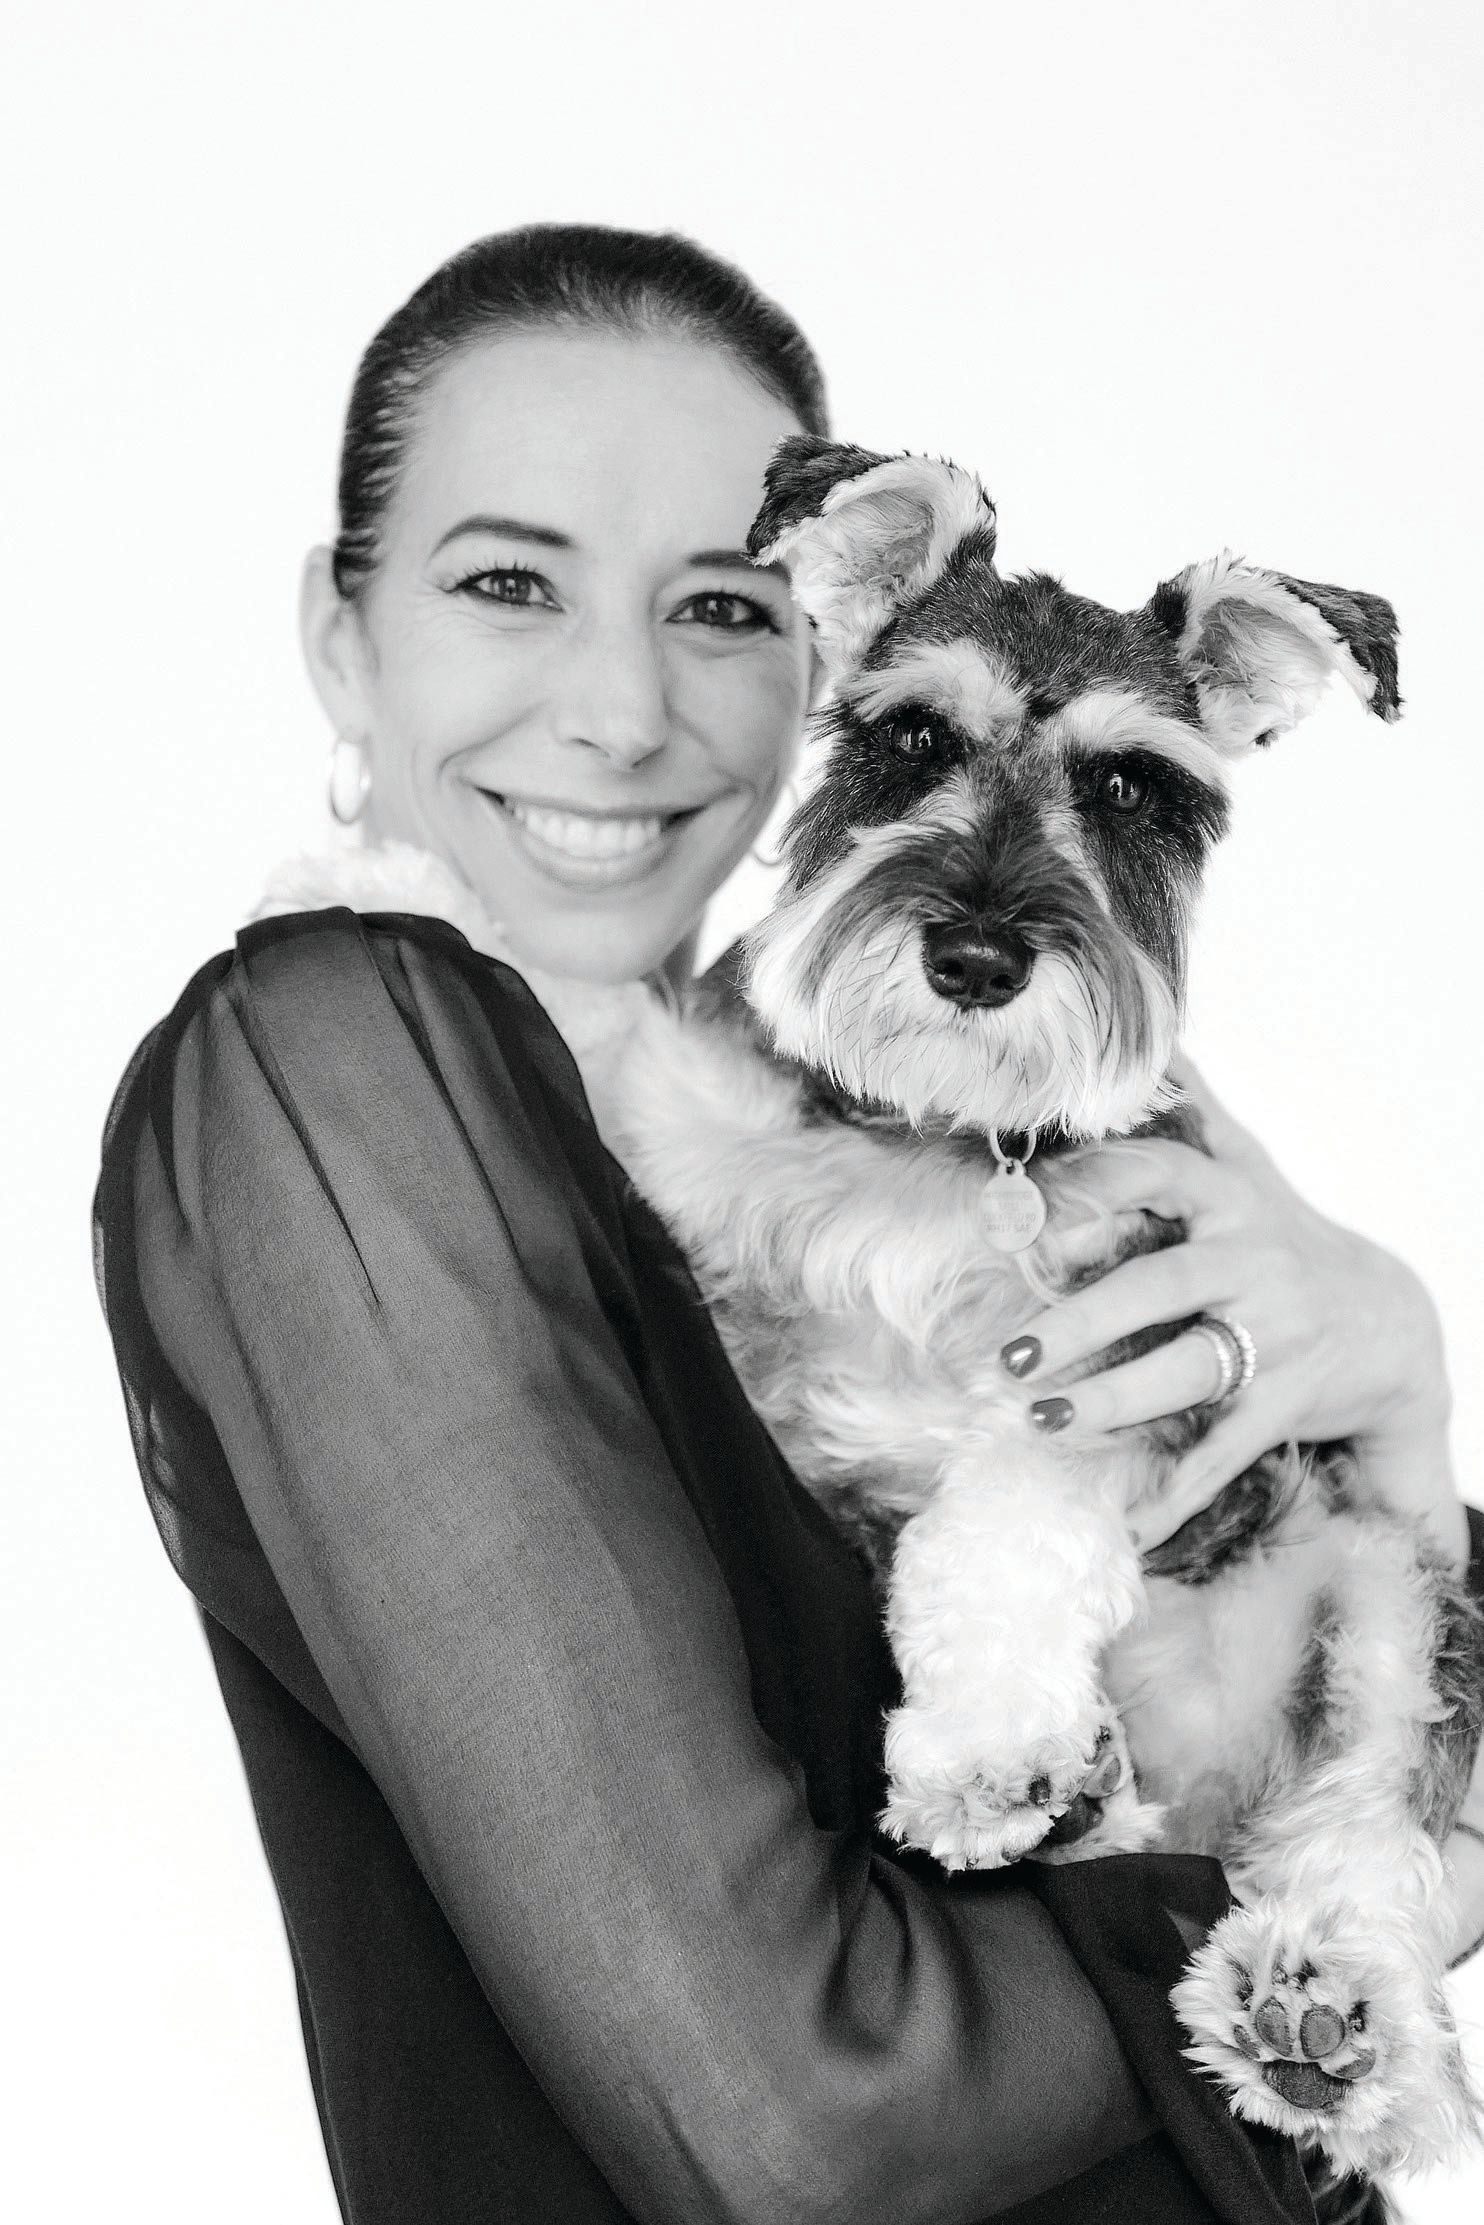 Manolo Blahnik CEO Kristina Blahnik with her precious pup, Poppins. PORTRAIT BY DARREN GERRISH